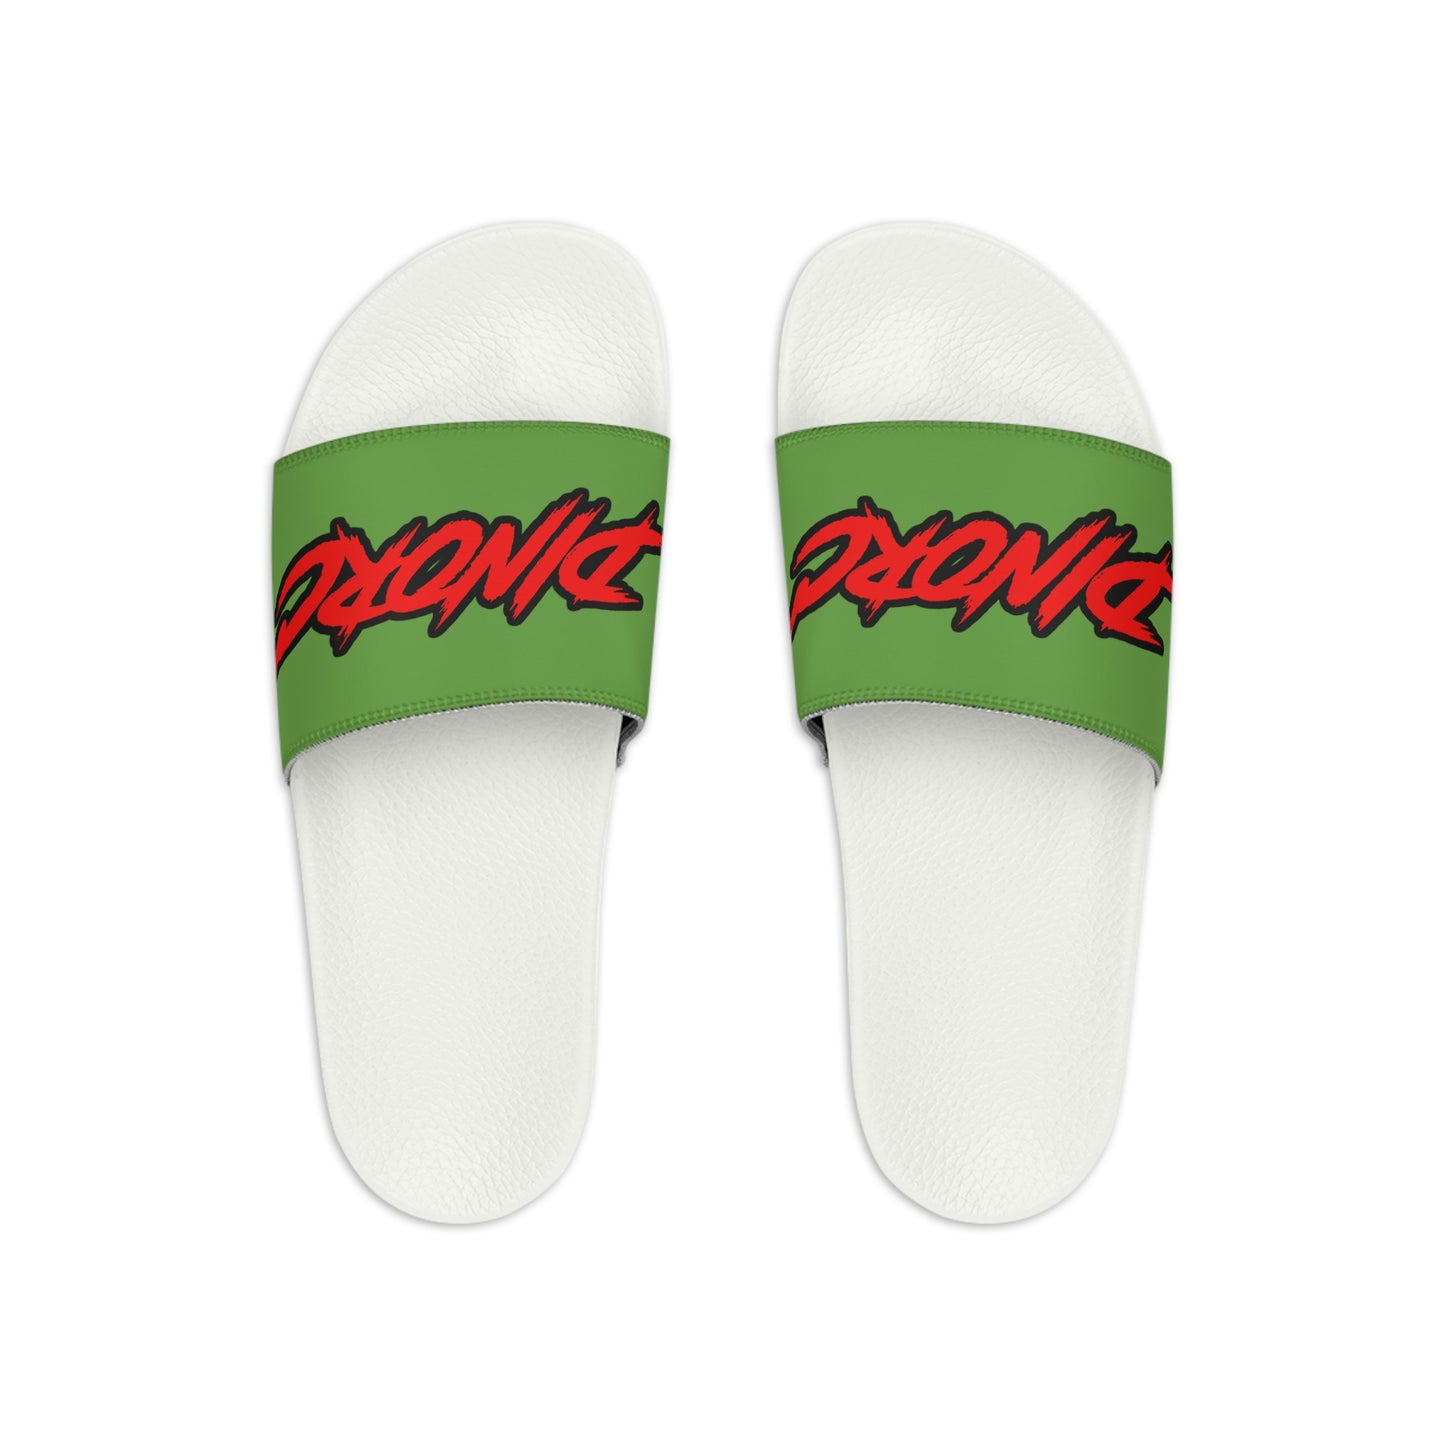 DinoRC Men's Slide Sandals